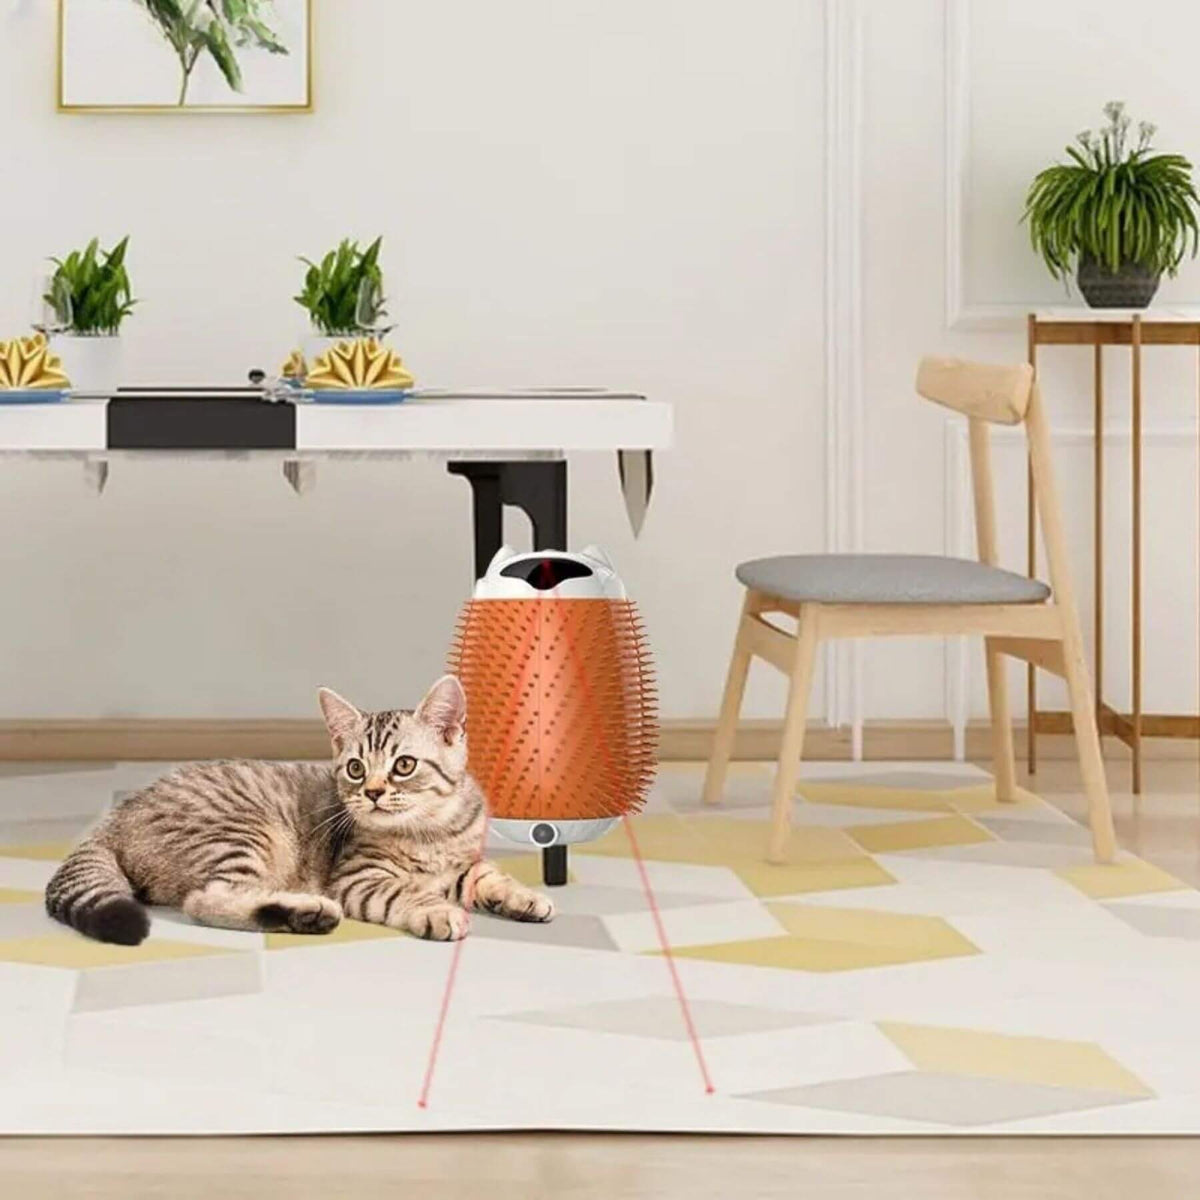 Katze sitzt im Wohnzimmer neben dem automatisch rotierende Katzenbürste Bibo